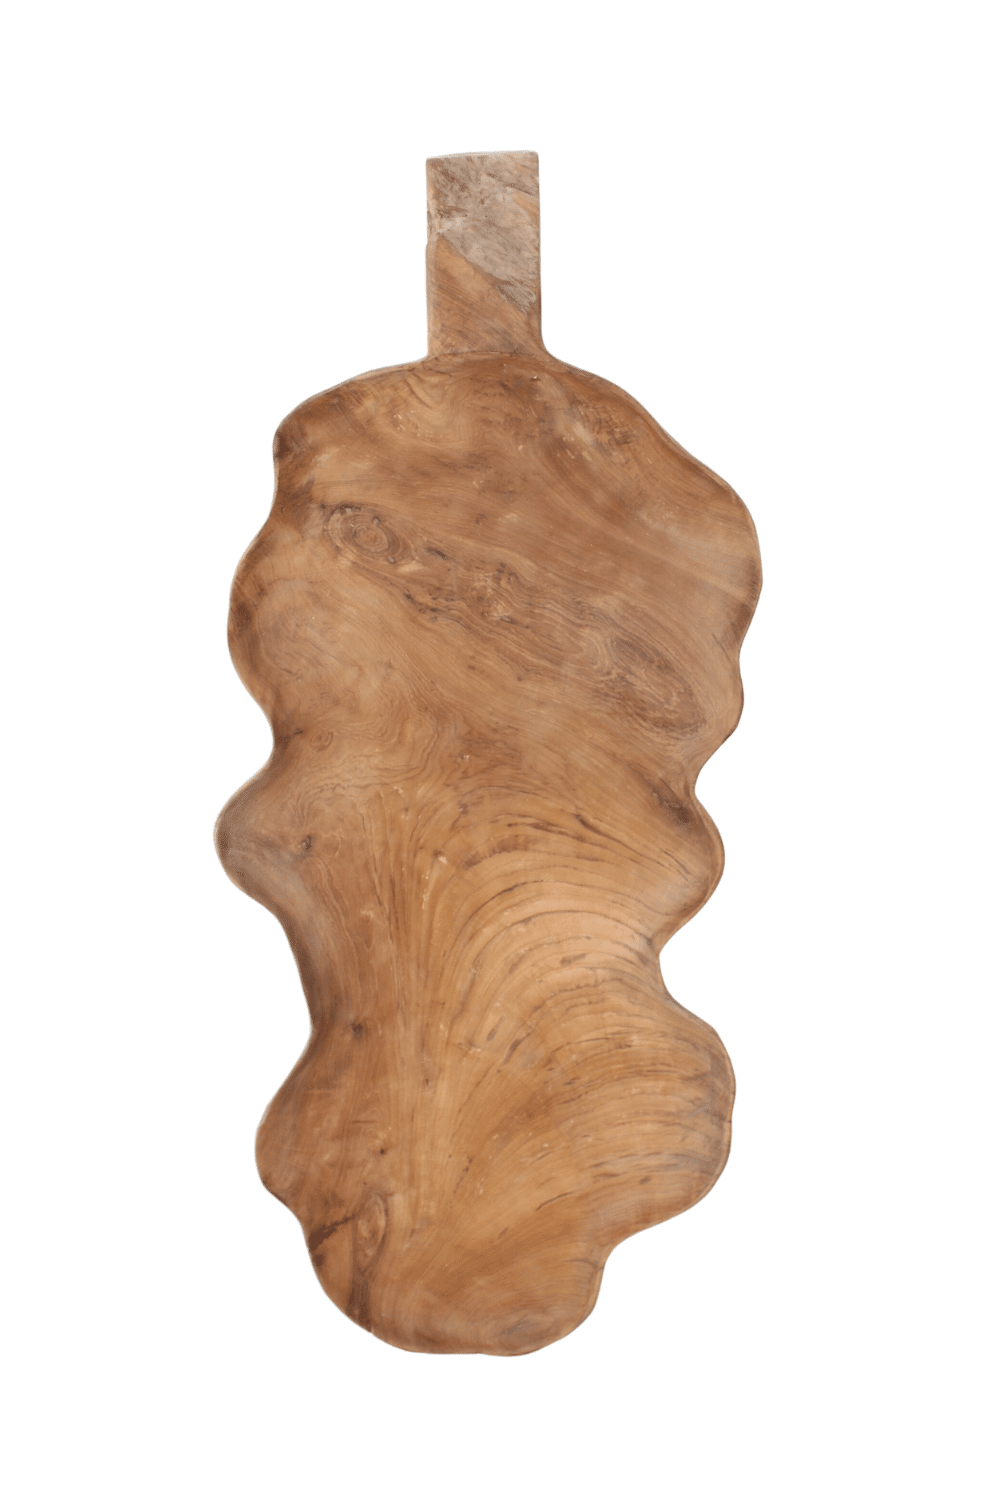 teak houten schaal hele grote schaal van hout voor op tafel in de vorm van een blad.